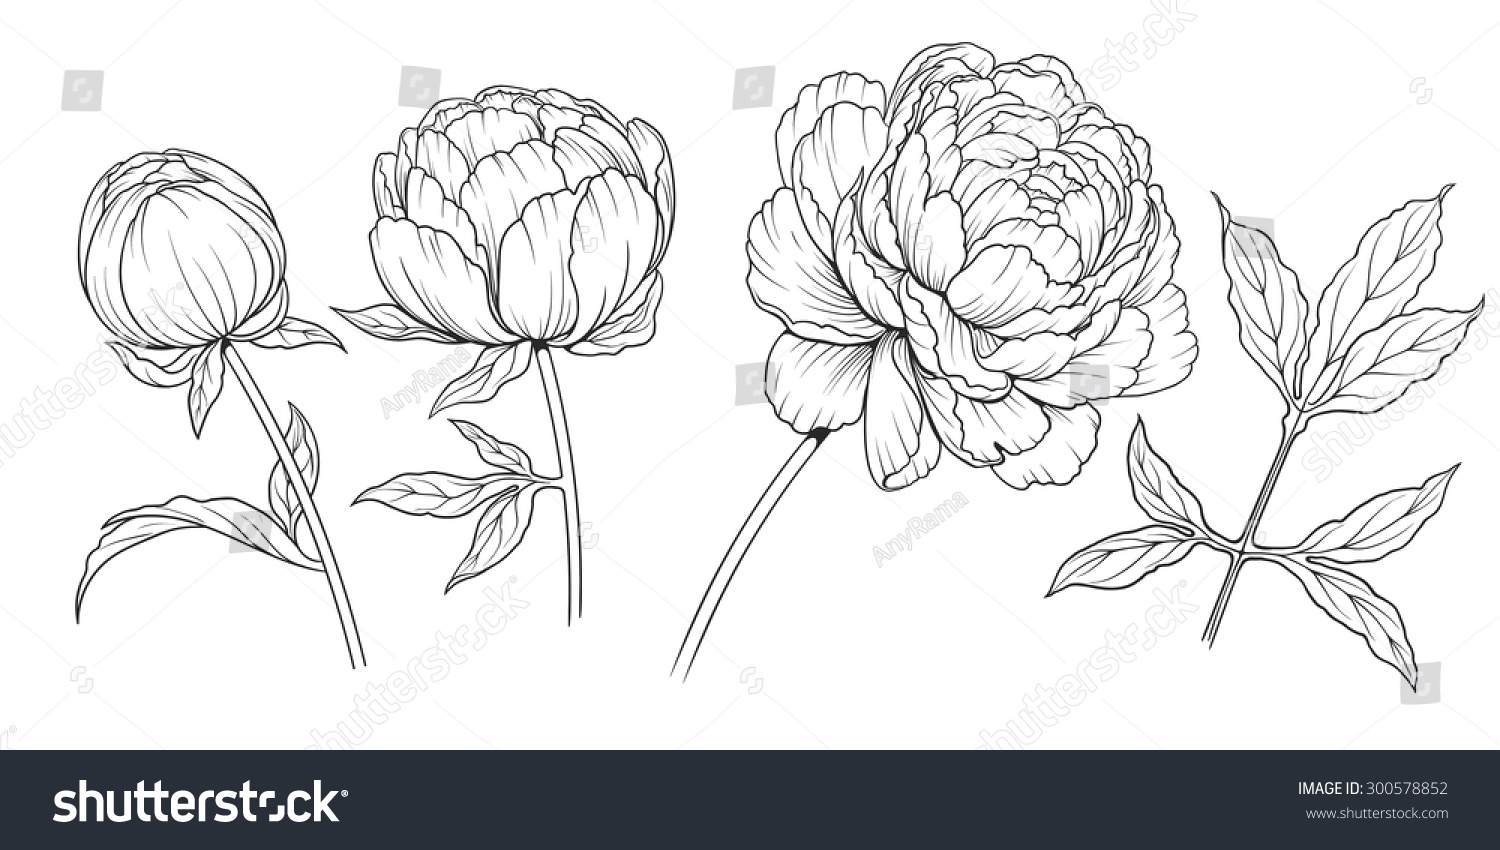 牡丹の花の白黒のイラスト のベクター画像素材 ロイヤリティフリー Shutterstock